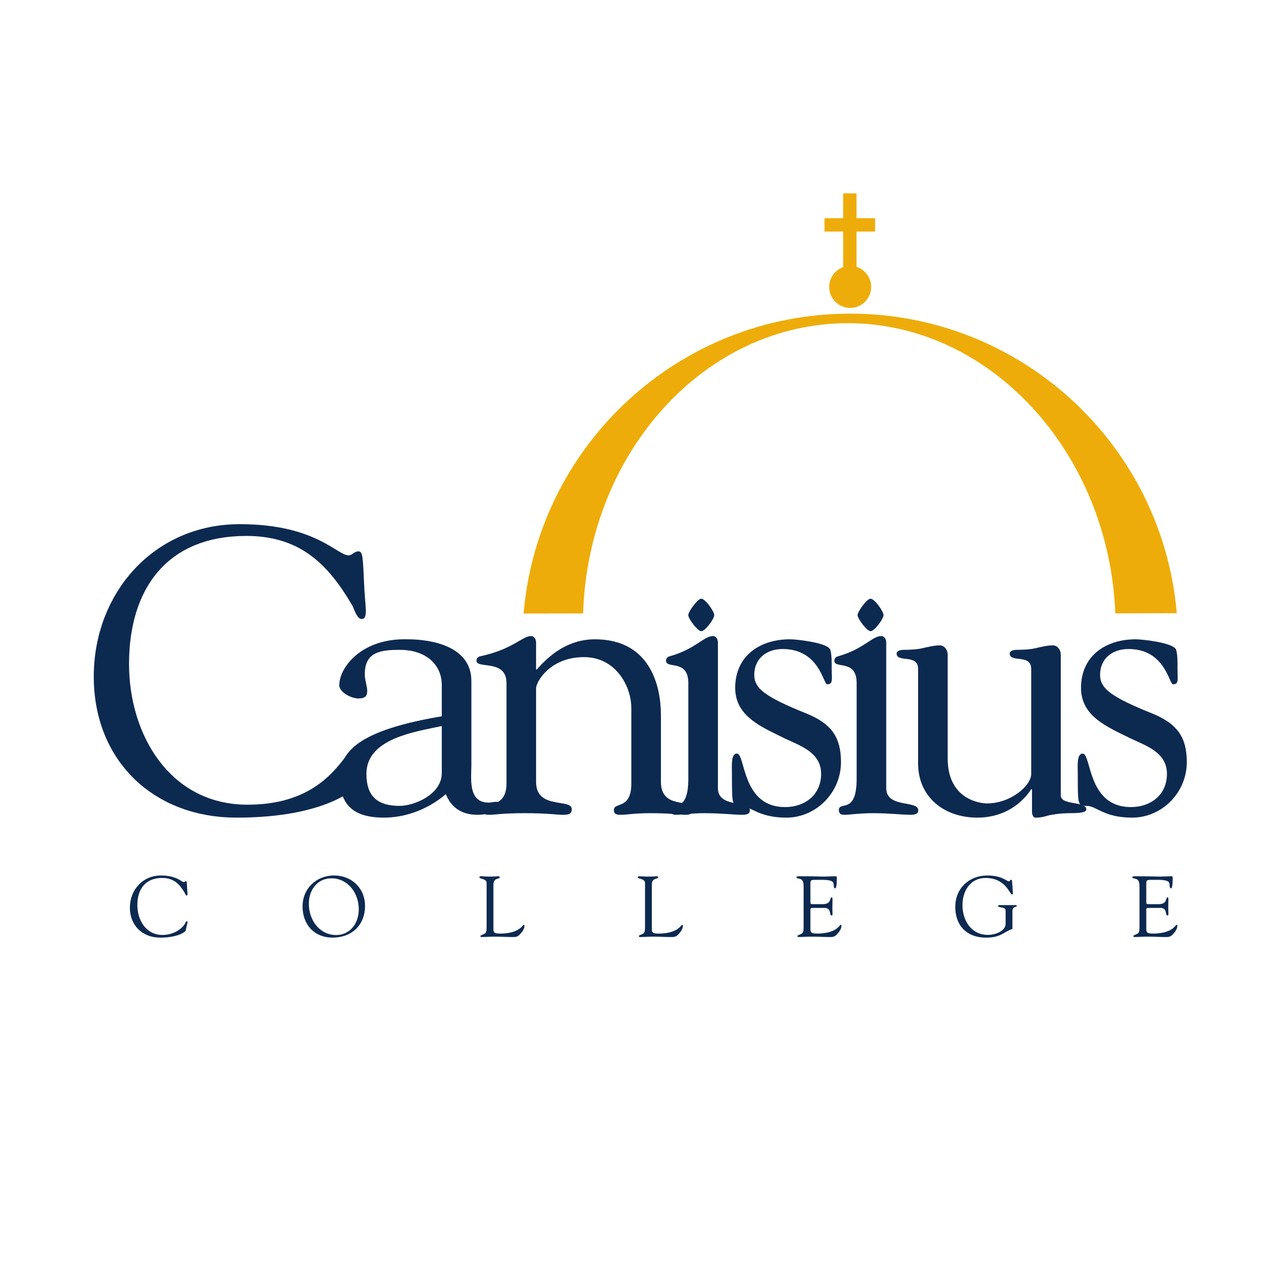 Canisius Logo - Canisius College Shopping Center